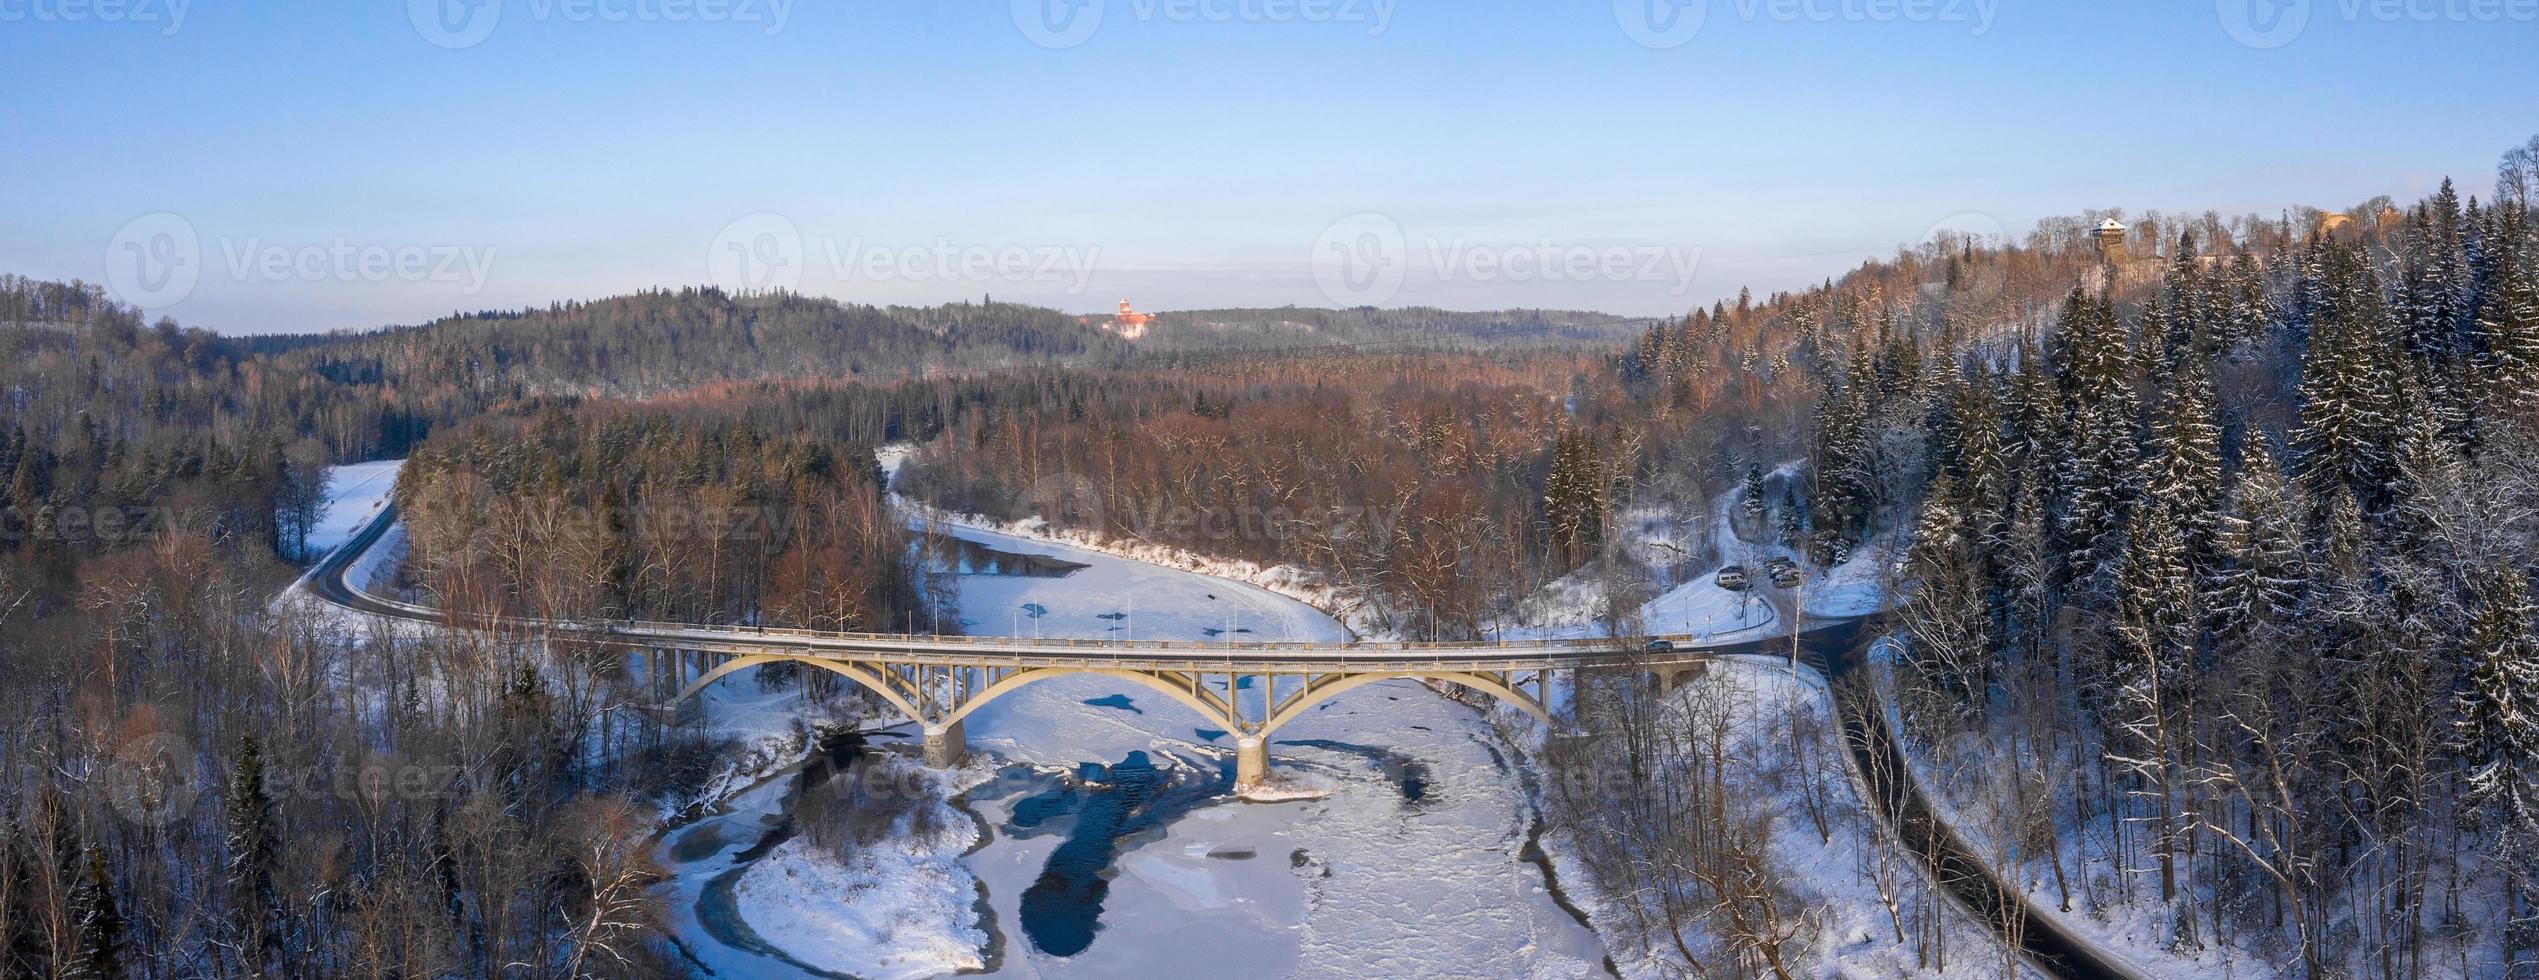 vue aérienne de la rivière et de la forêt enneigée après un blizzard dans une brume matinale. ciel bleu clair. des merveilles d'hiver. Parc national de Gauja, Sigulda, Lettonie photo